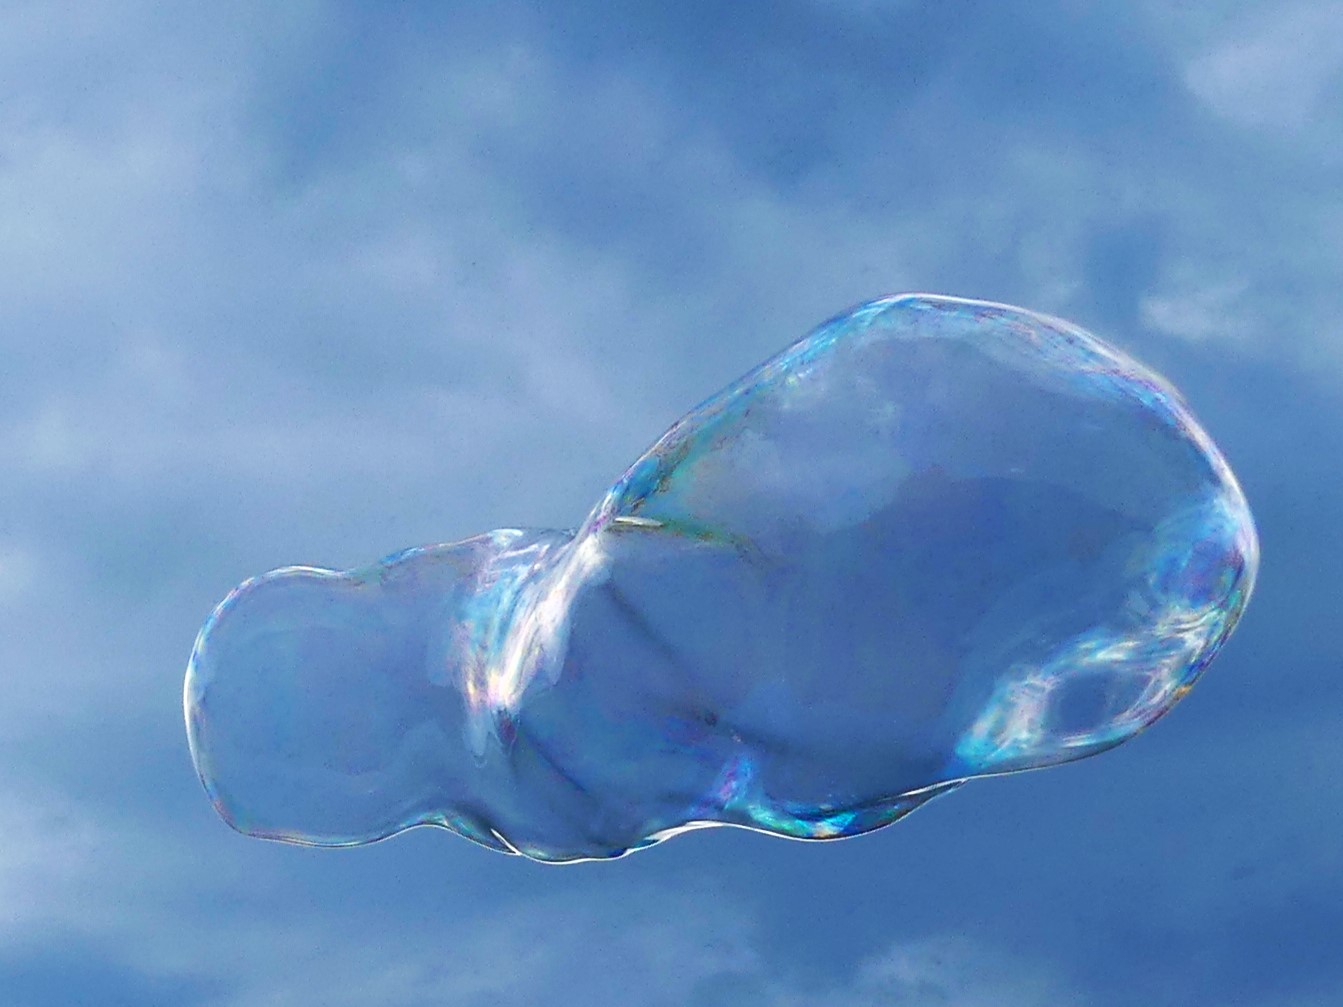 Riesenseifenblasen wabern durch die Luft